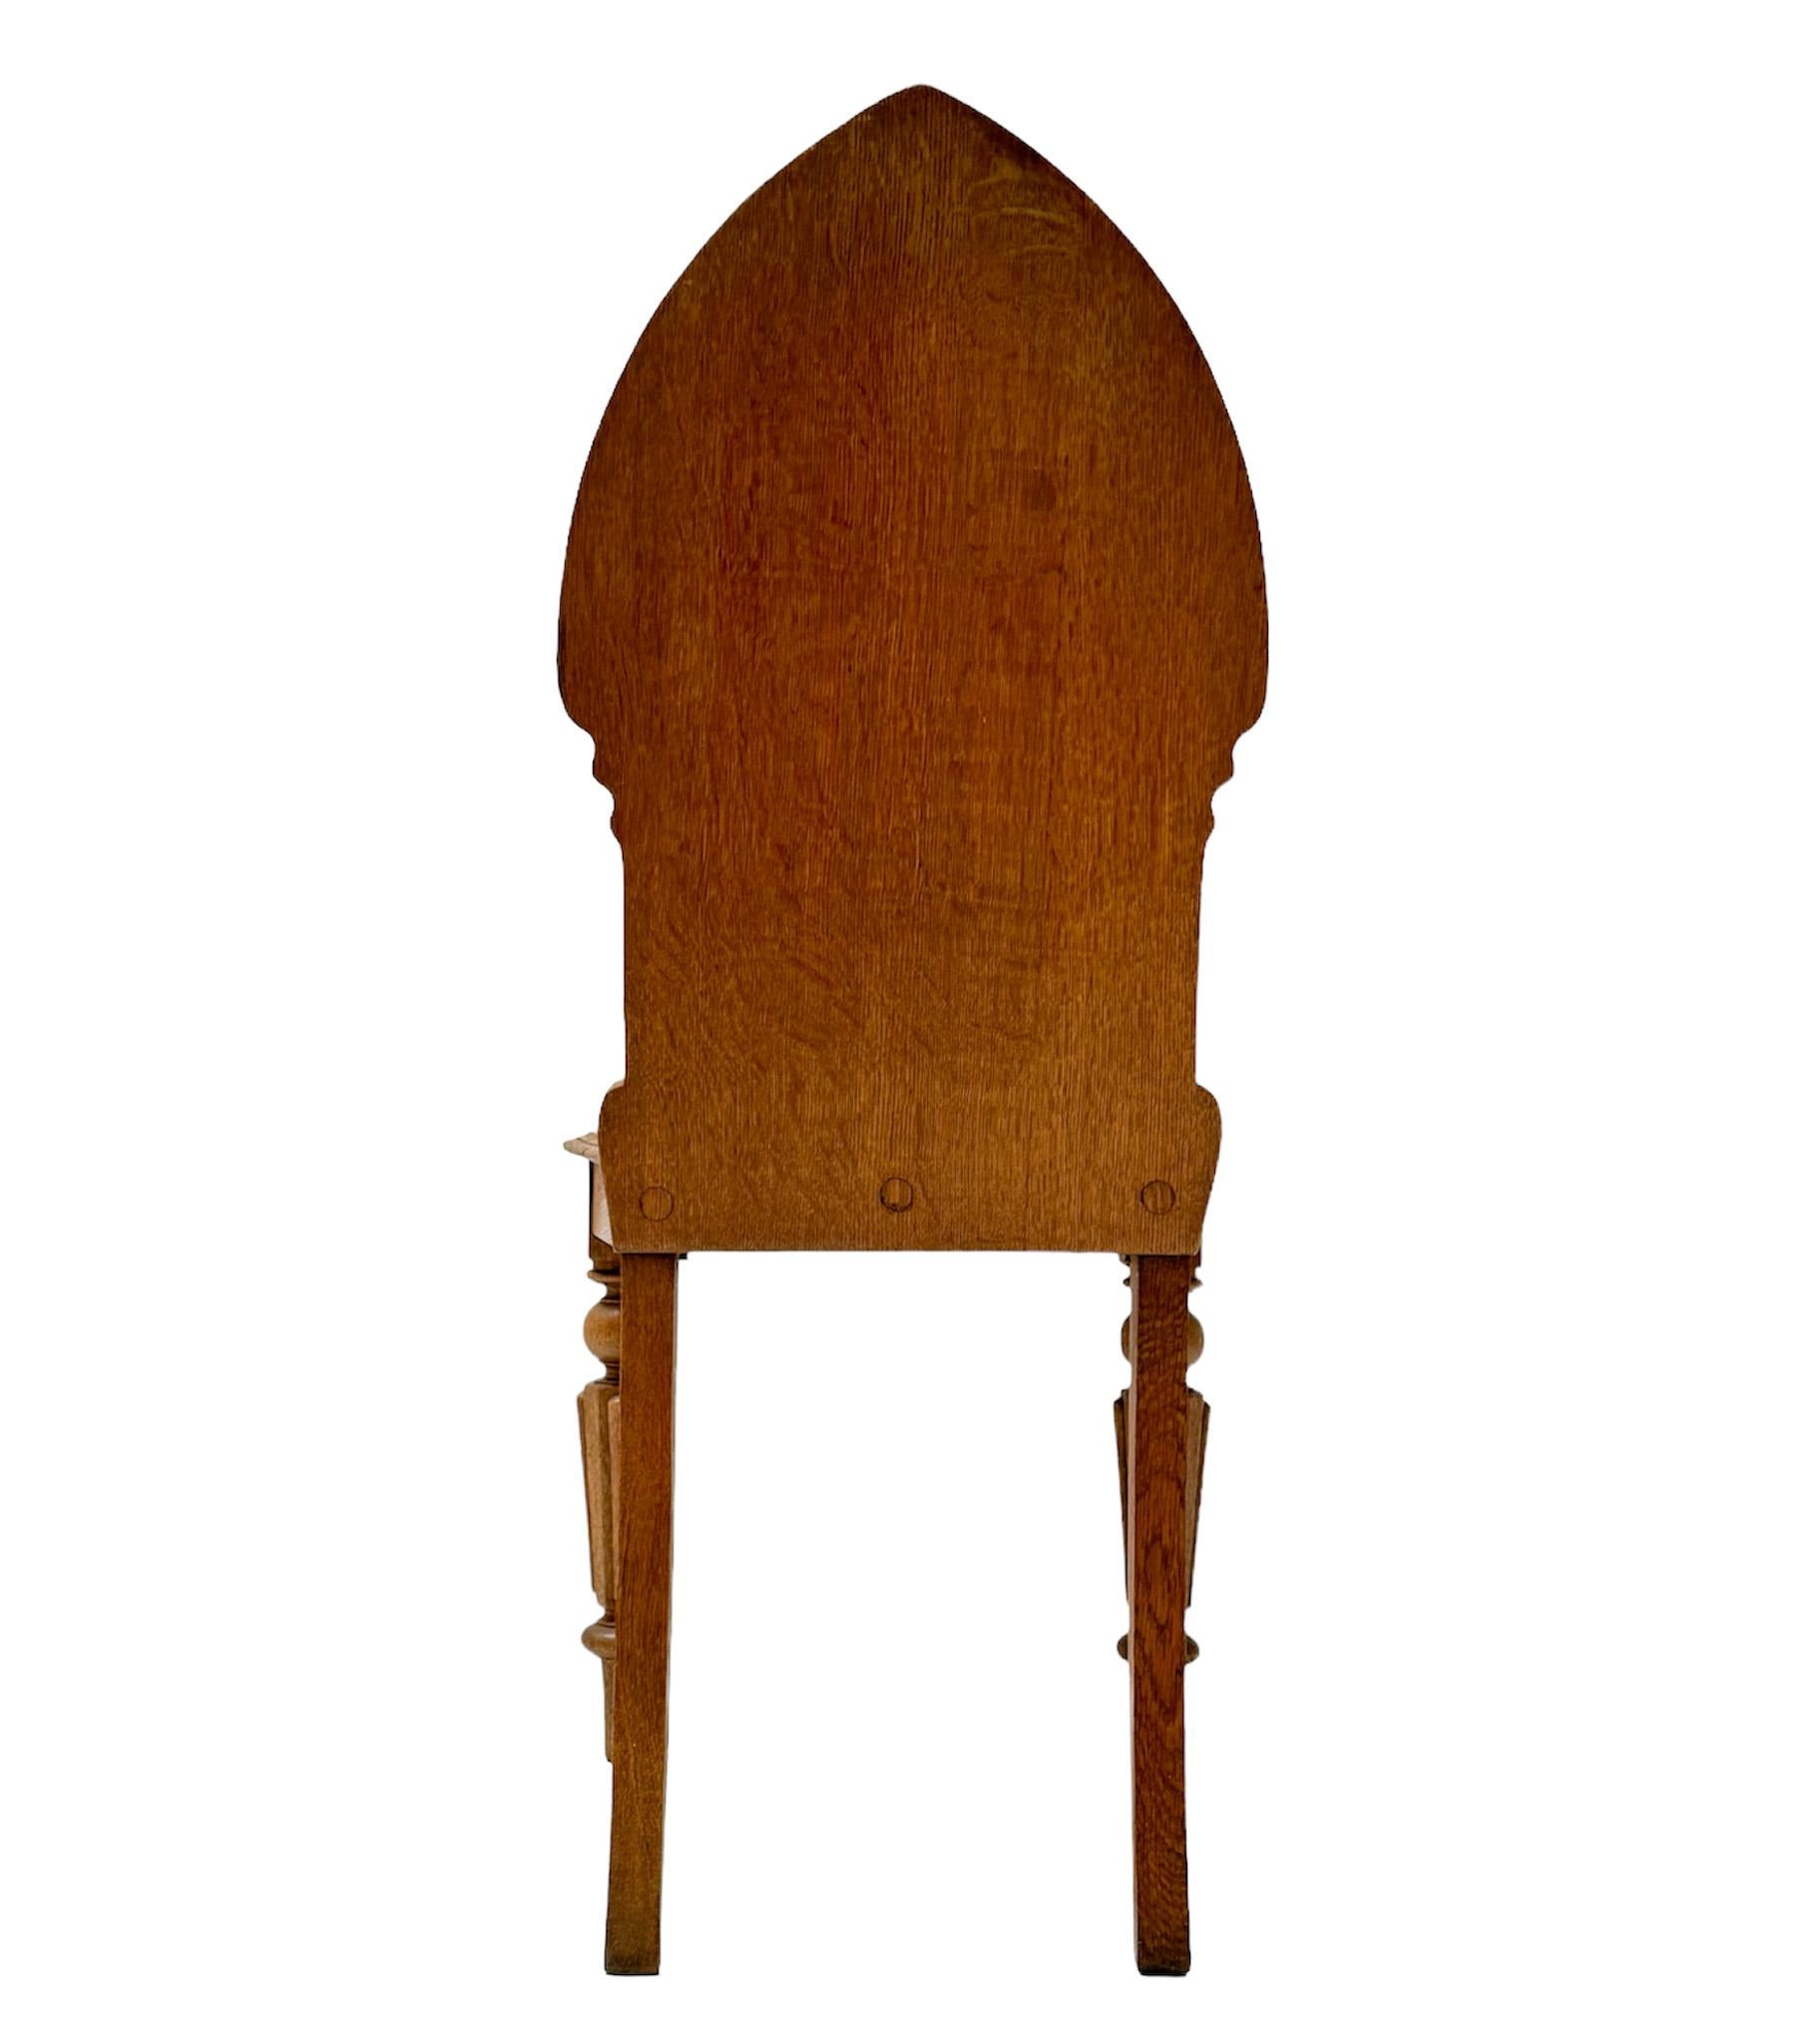 Atemberaubender und seltener Beistellstuhl aus der Zeit der Gotik.
Auffälliges niederländisches Design aus den 1930er Jahren.
Massiver Eichenholzrahmen mit originalen handgeschnitzten Elementen.
Dieser wunderbare Beistellstuhl im gotischen Stil ist